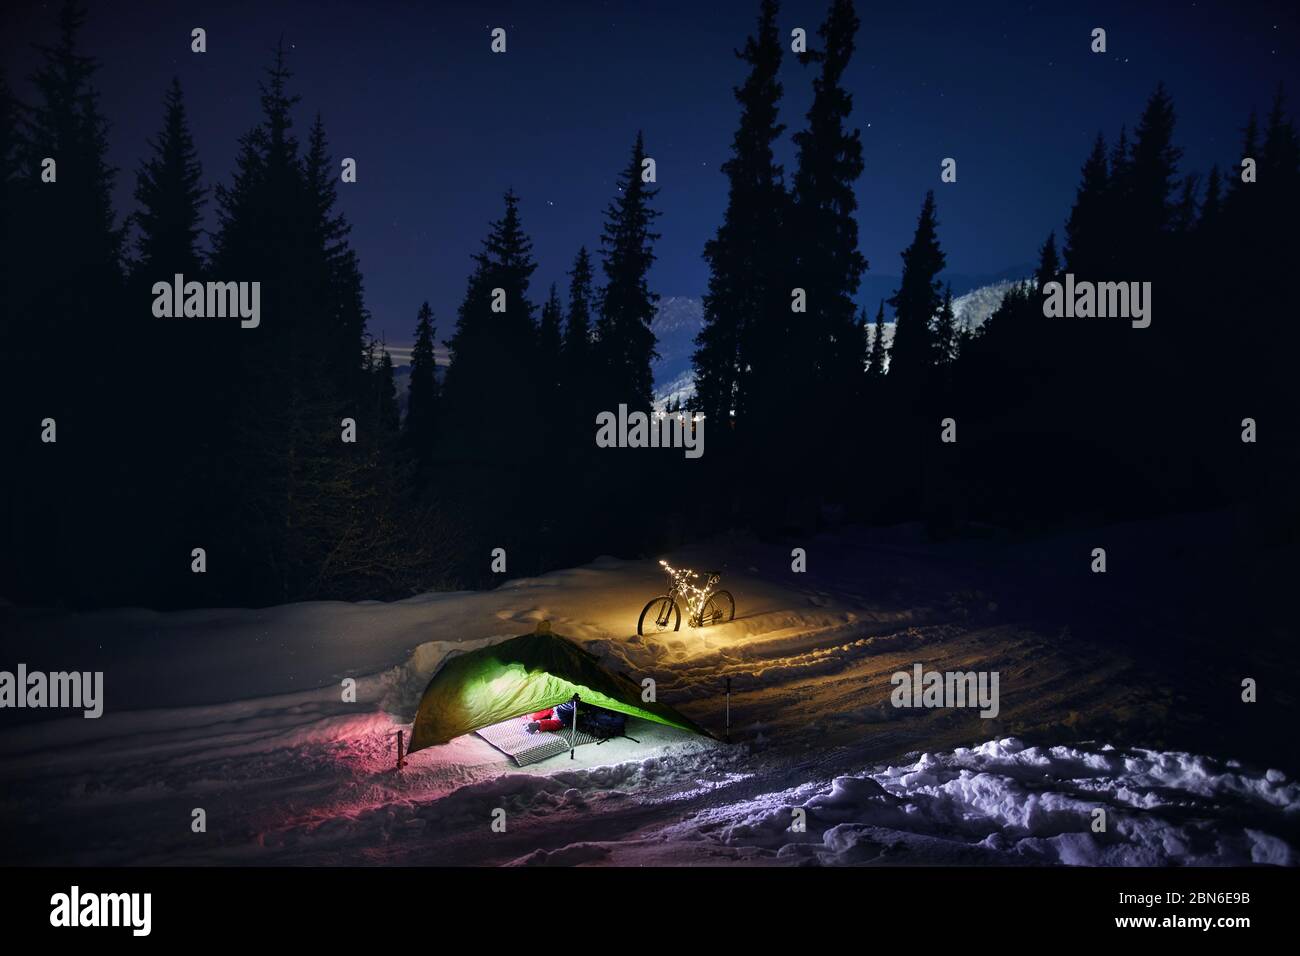 Leuchtende grüne Zelt und Fahrrad mit Weihnachtsbeleuchtung im Winter Wald unter Nachthimmel mit Sternen. Bikepacking Lebensstil und Weihnachten Konzept. Stockfoto